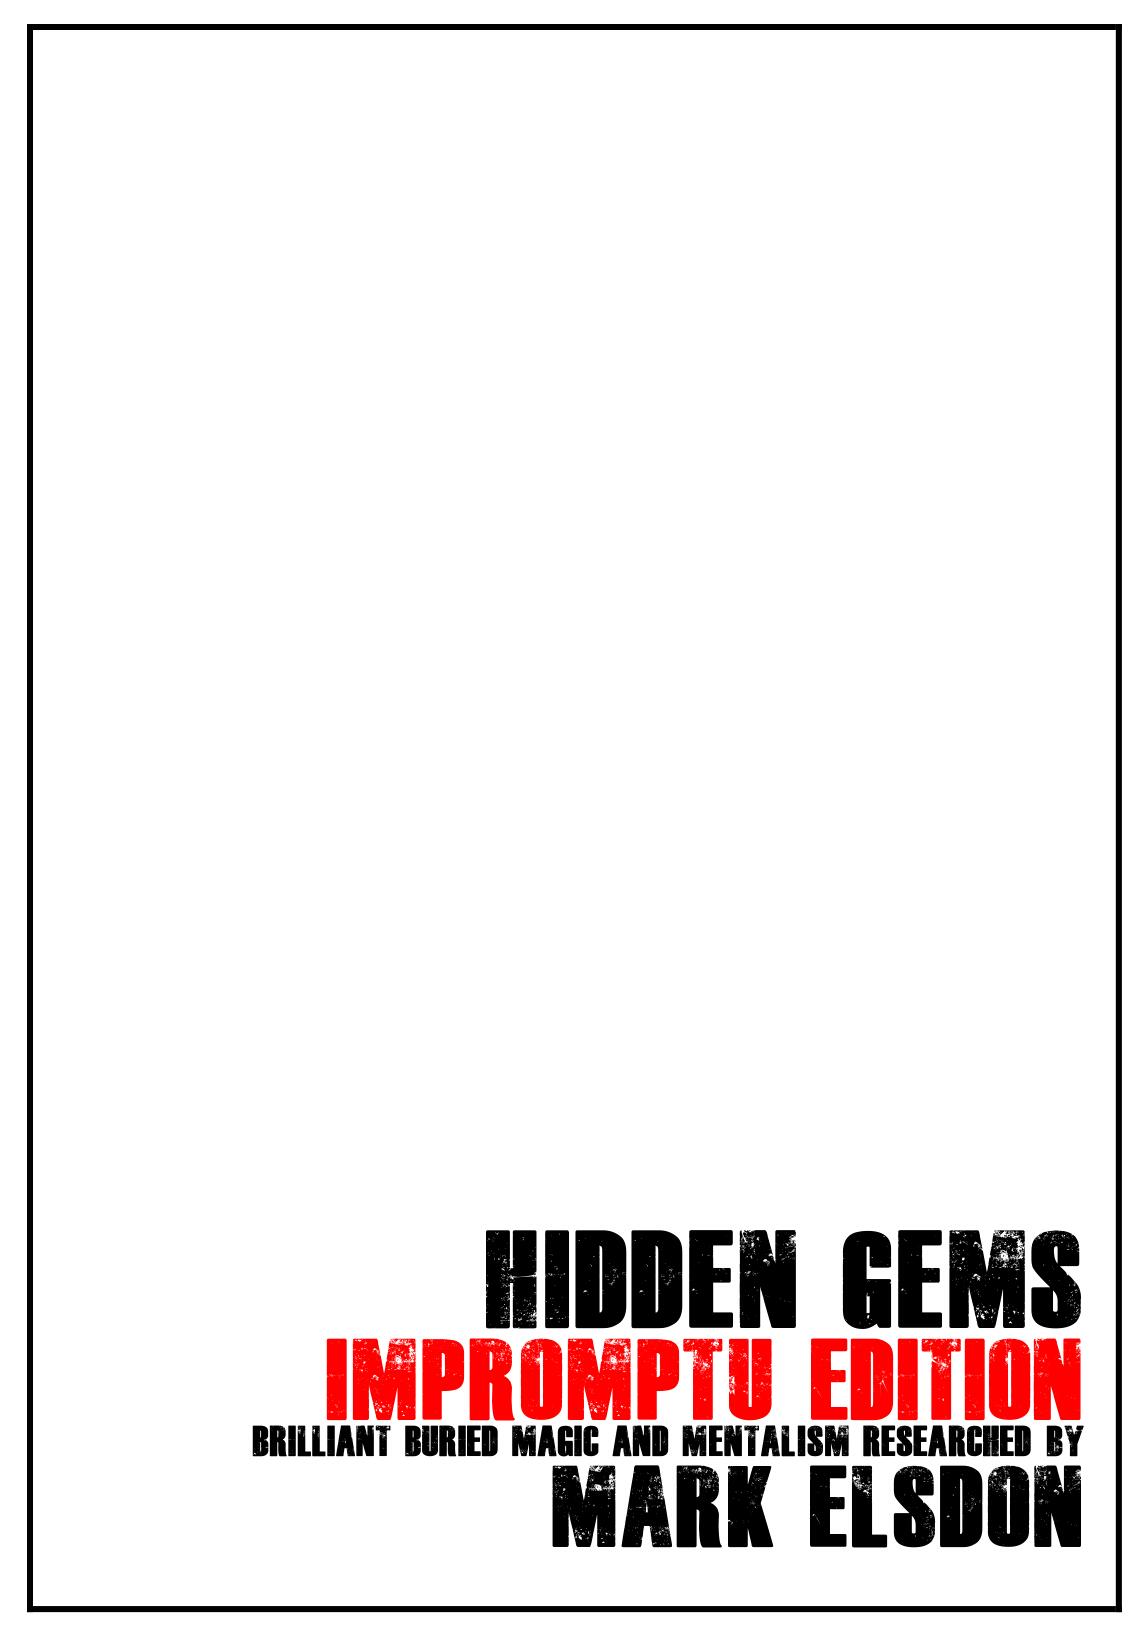 Mark Elsdon - Hidden Gems Impromptu Edition